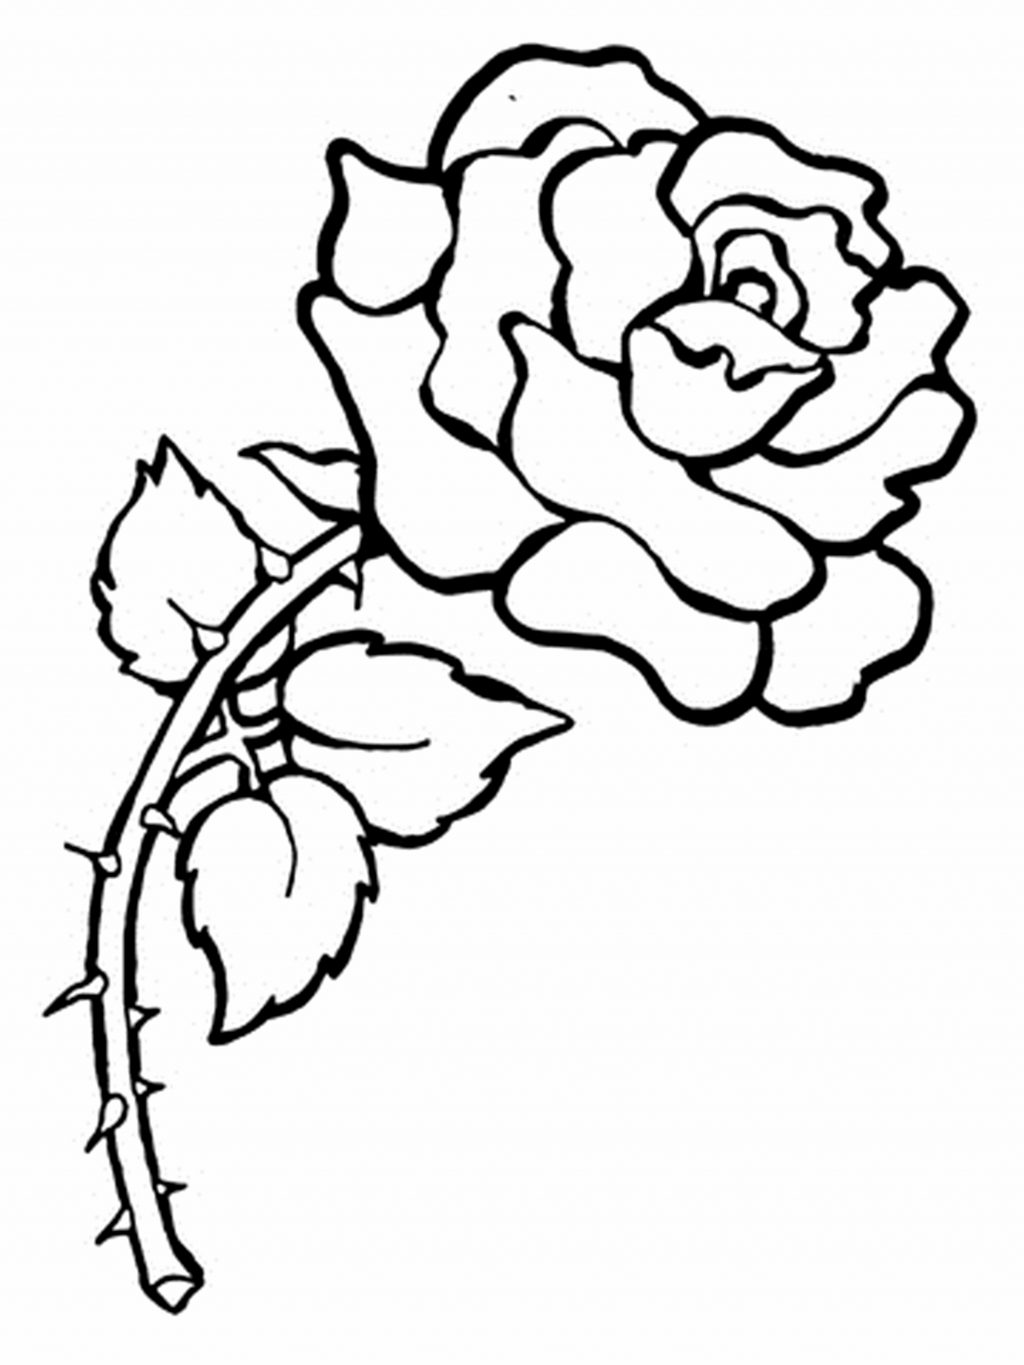 Tranh tô màu hình hoa hồng đơn giản nhất